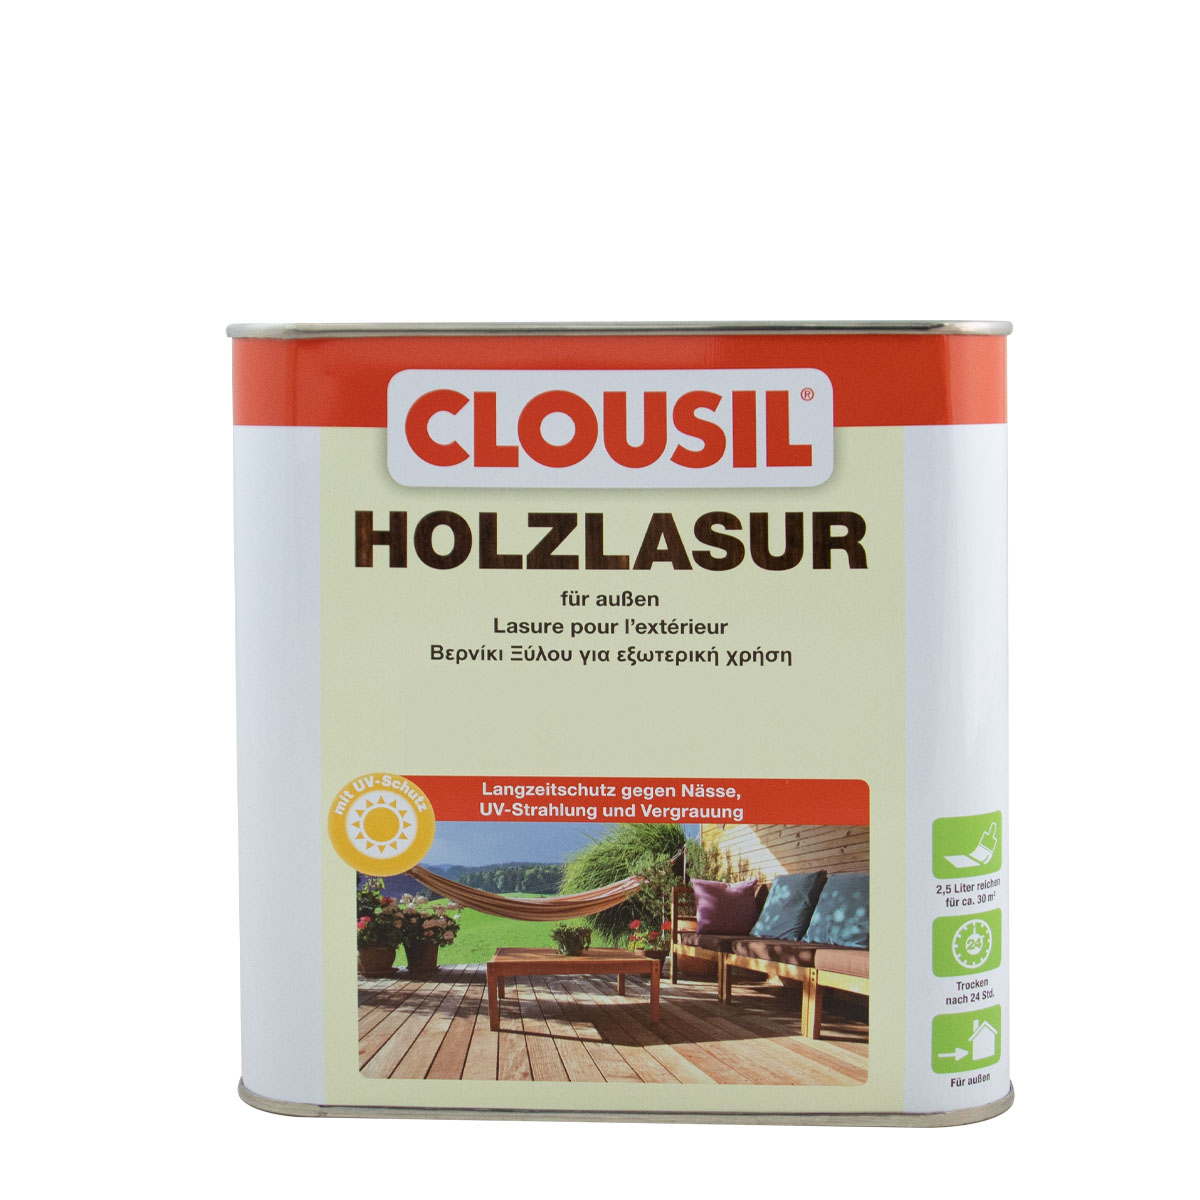 Clousil Holzlasur 2,5L eiche, für außen, schützt vor Witterung